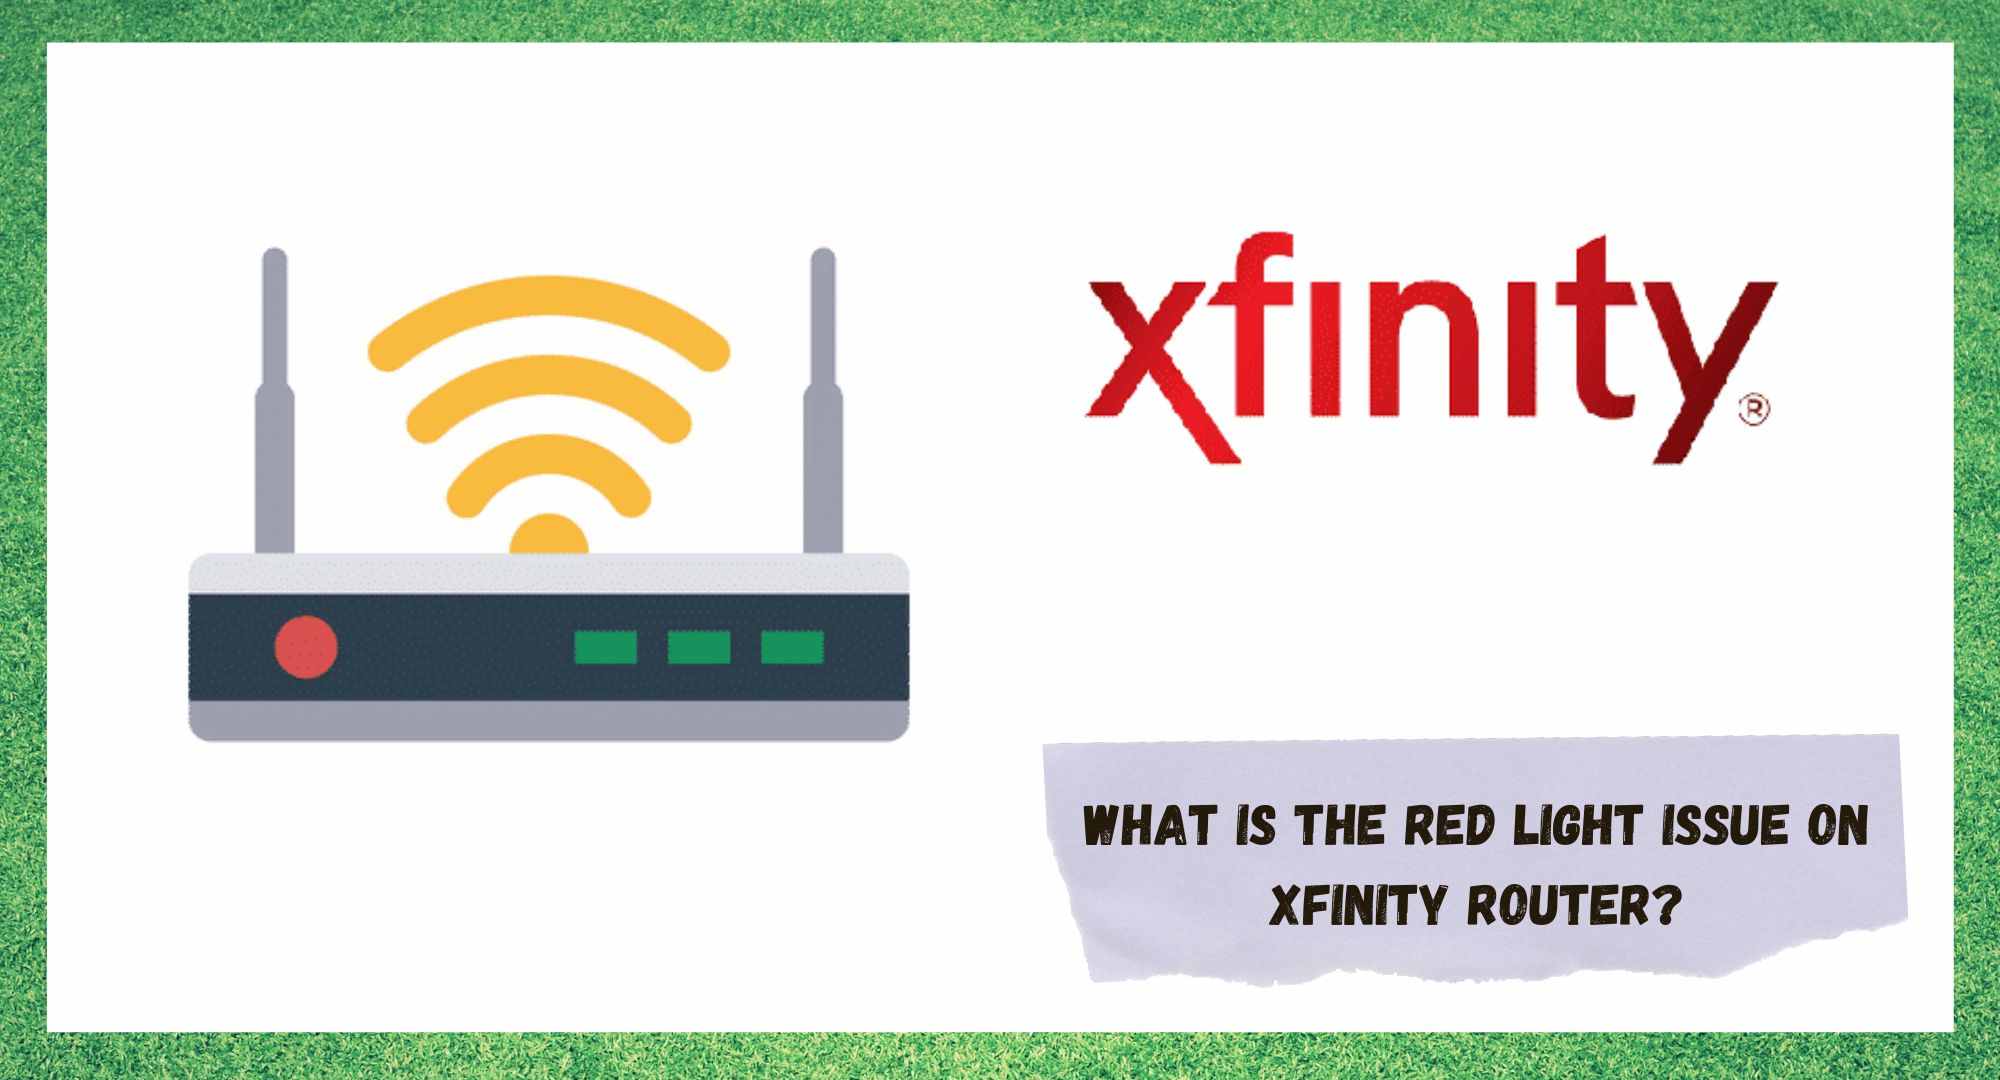 Xfinity Router Red Light ကို ပြုပြင်ရန် နည်းလမ်း 5 ခု